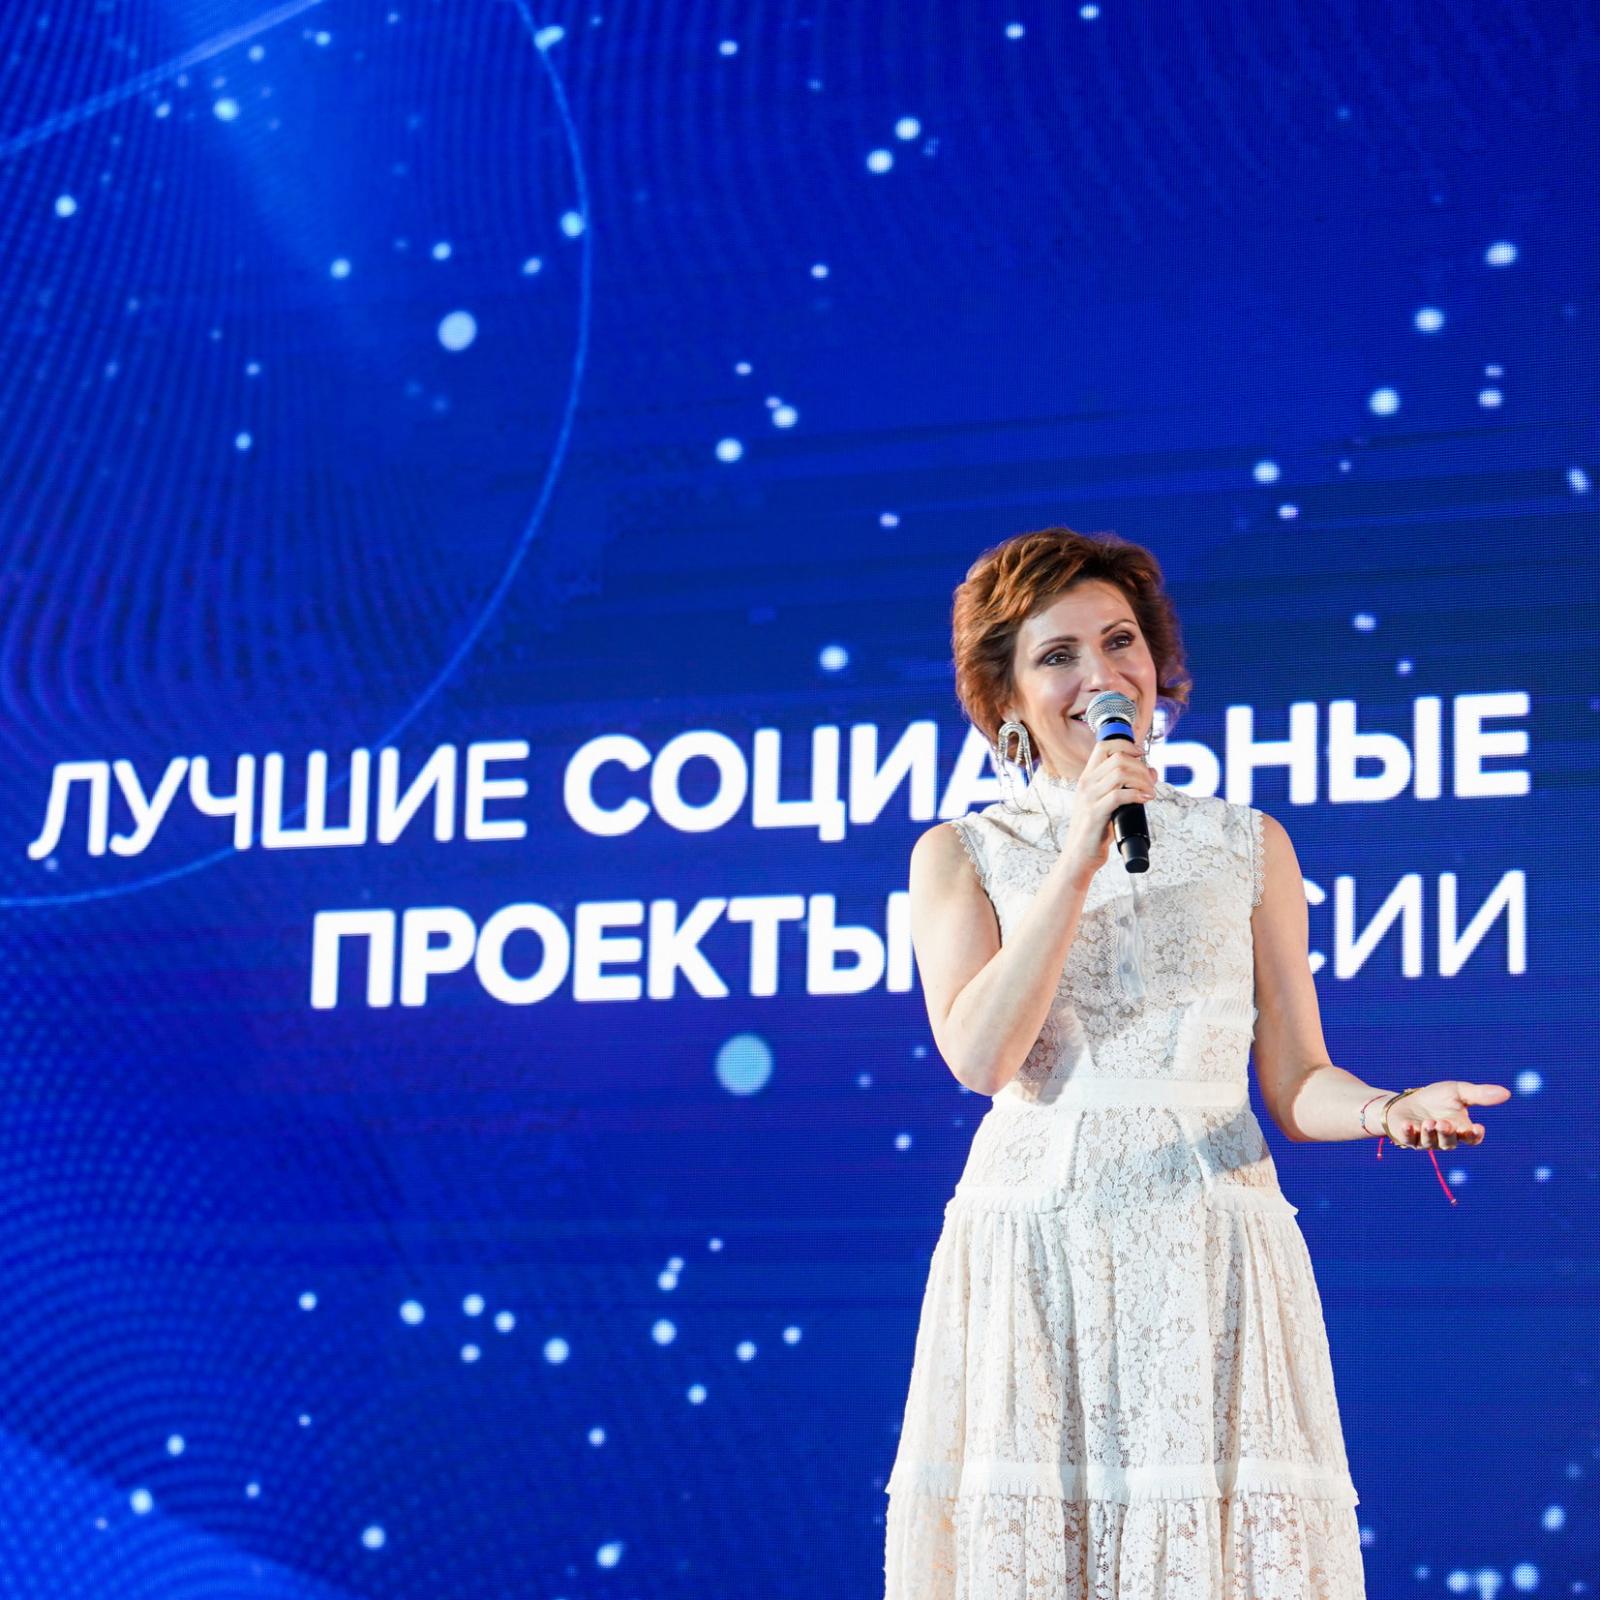 Объявлены лауреаты одиннадцатой Программы «Лучшие социальные проекты России»